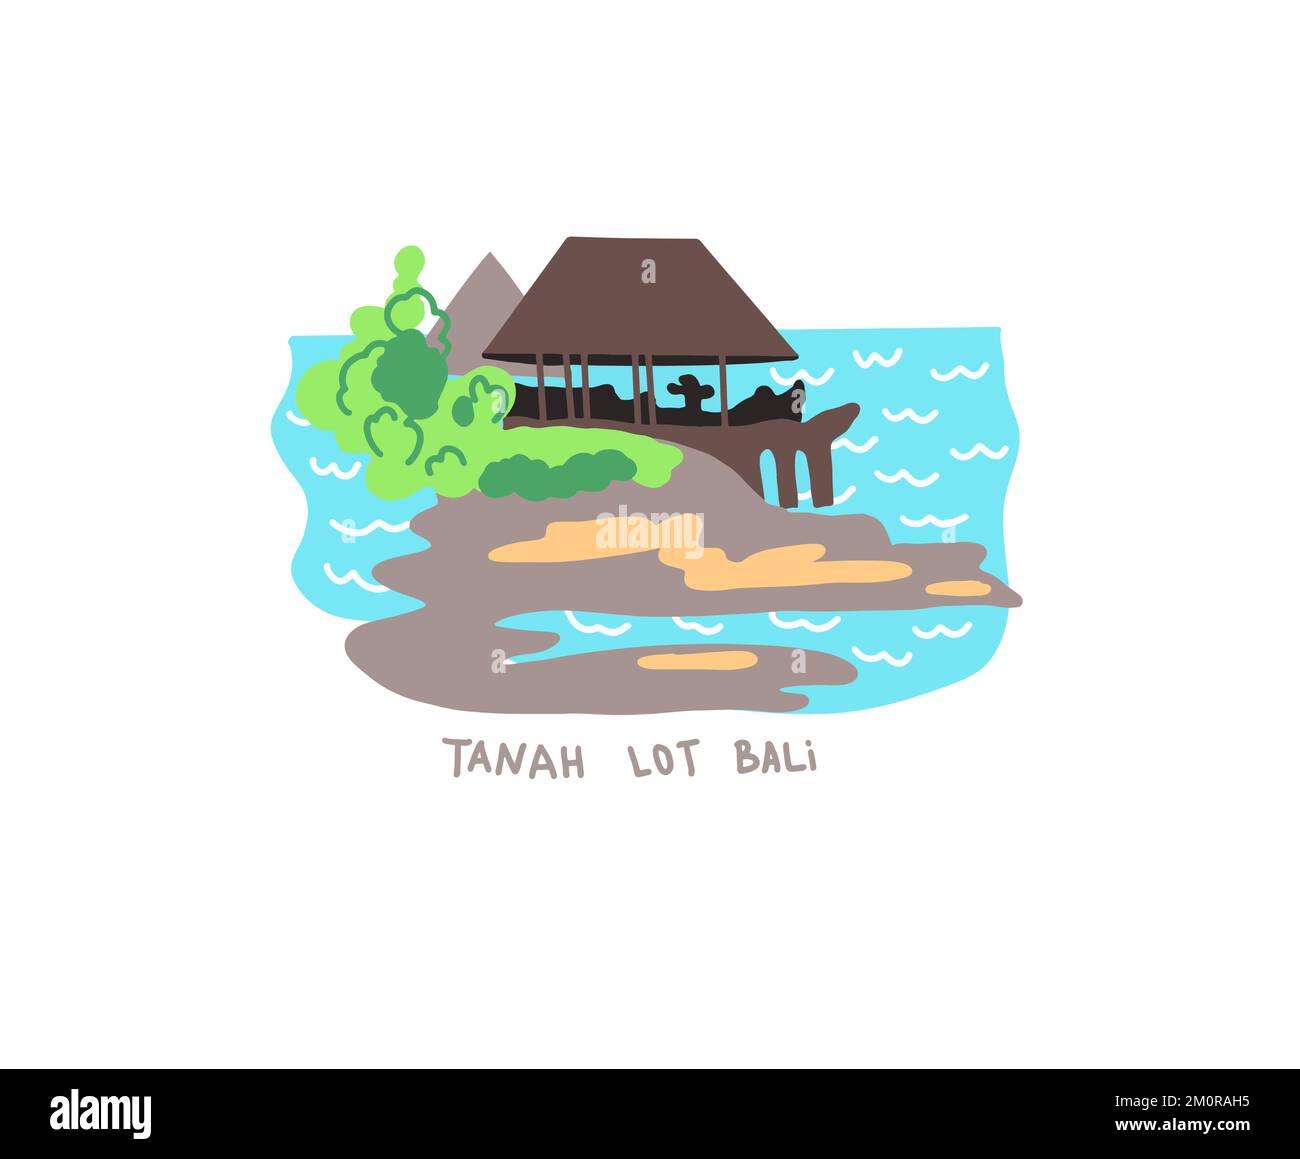 Tanah Lot - endroit célèbre à Bali Indonésie, dessin plat illustration vectorielle Illustration de Vecteur